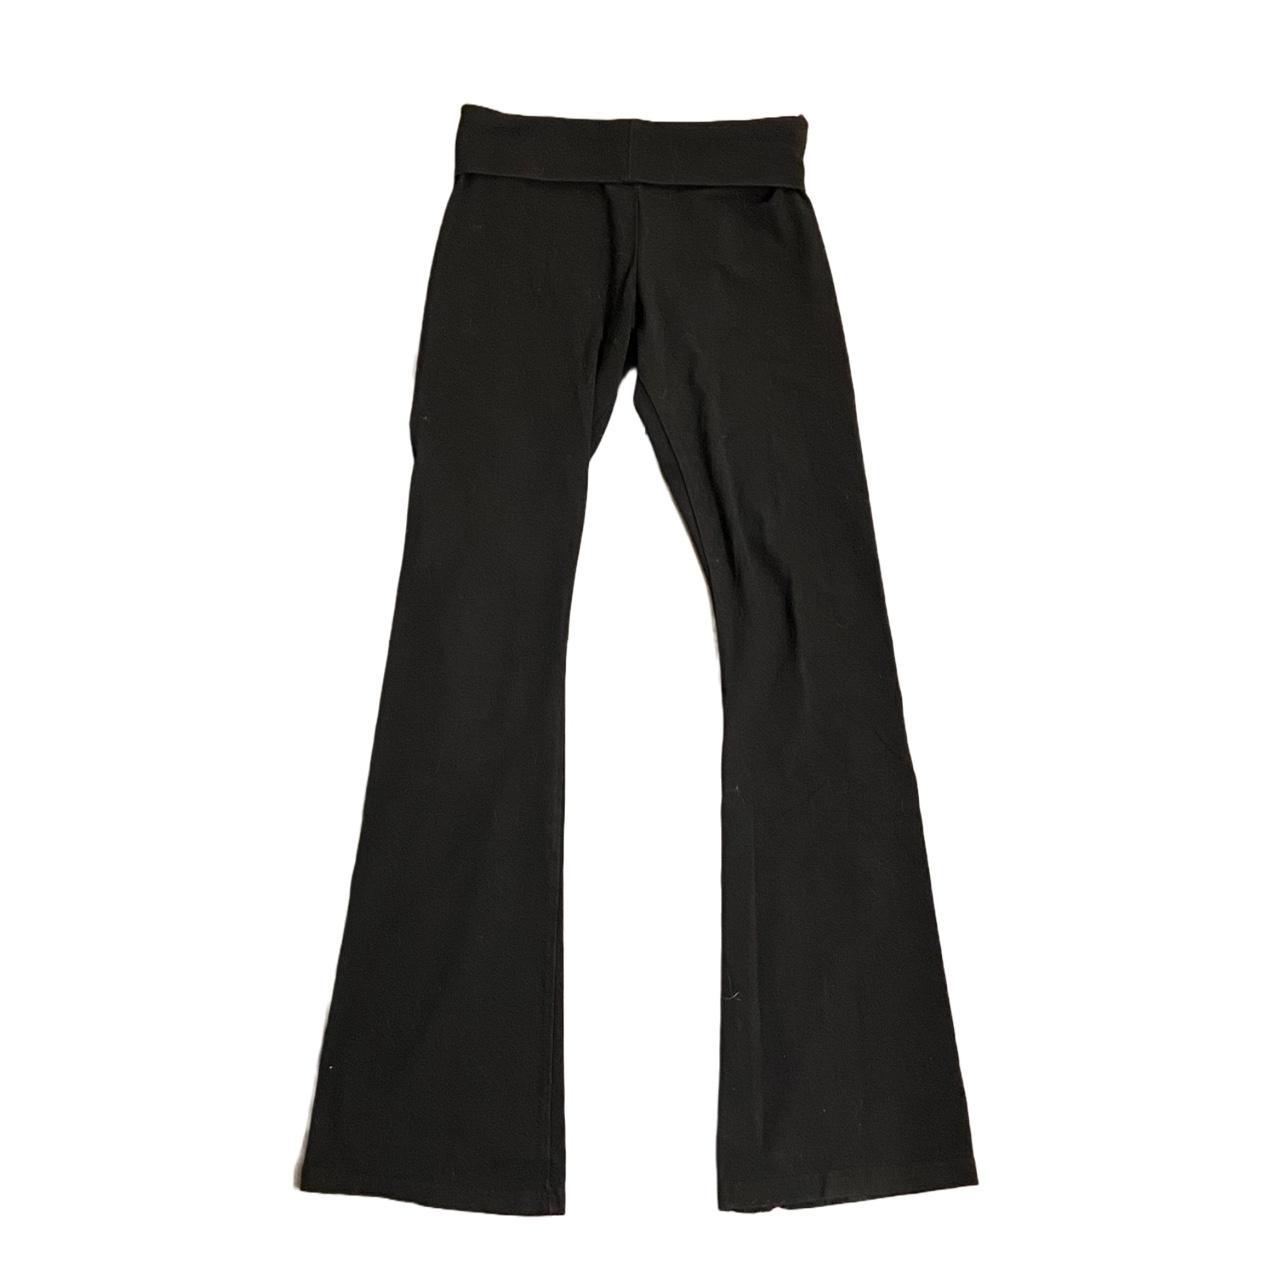 Brandy Melville Women's Black Trousers | Depop